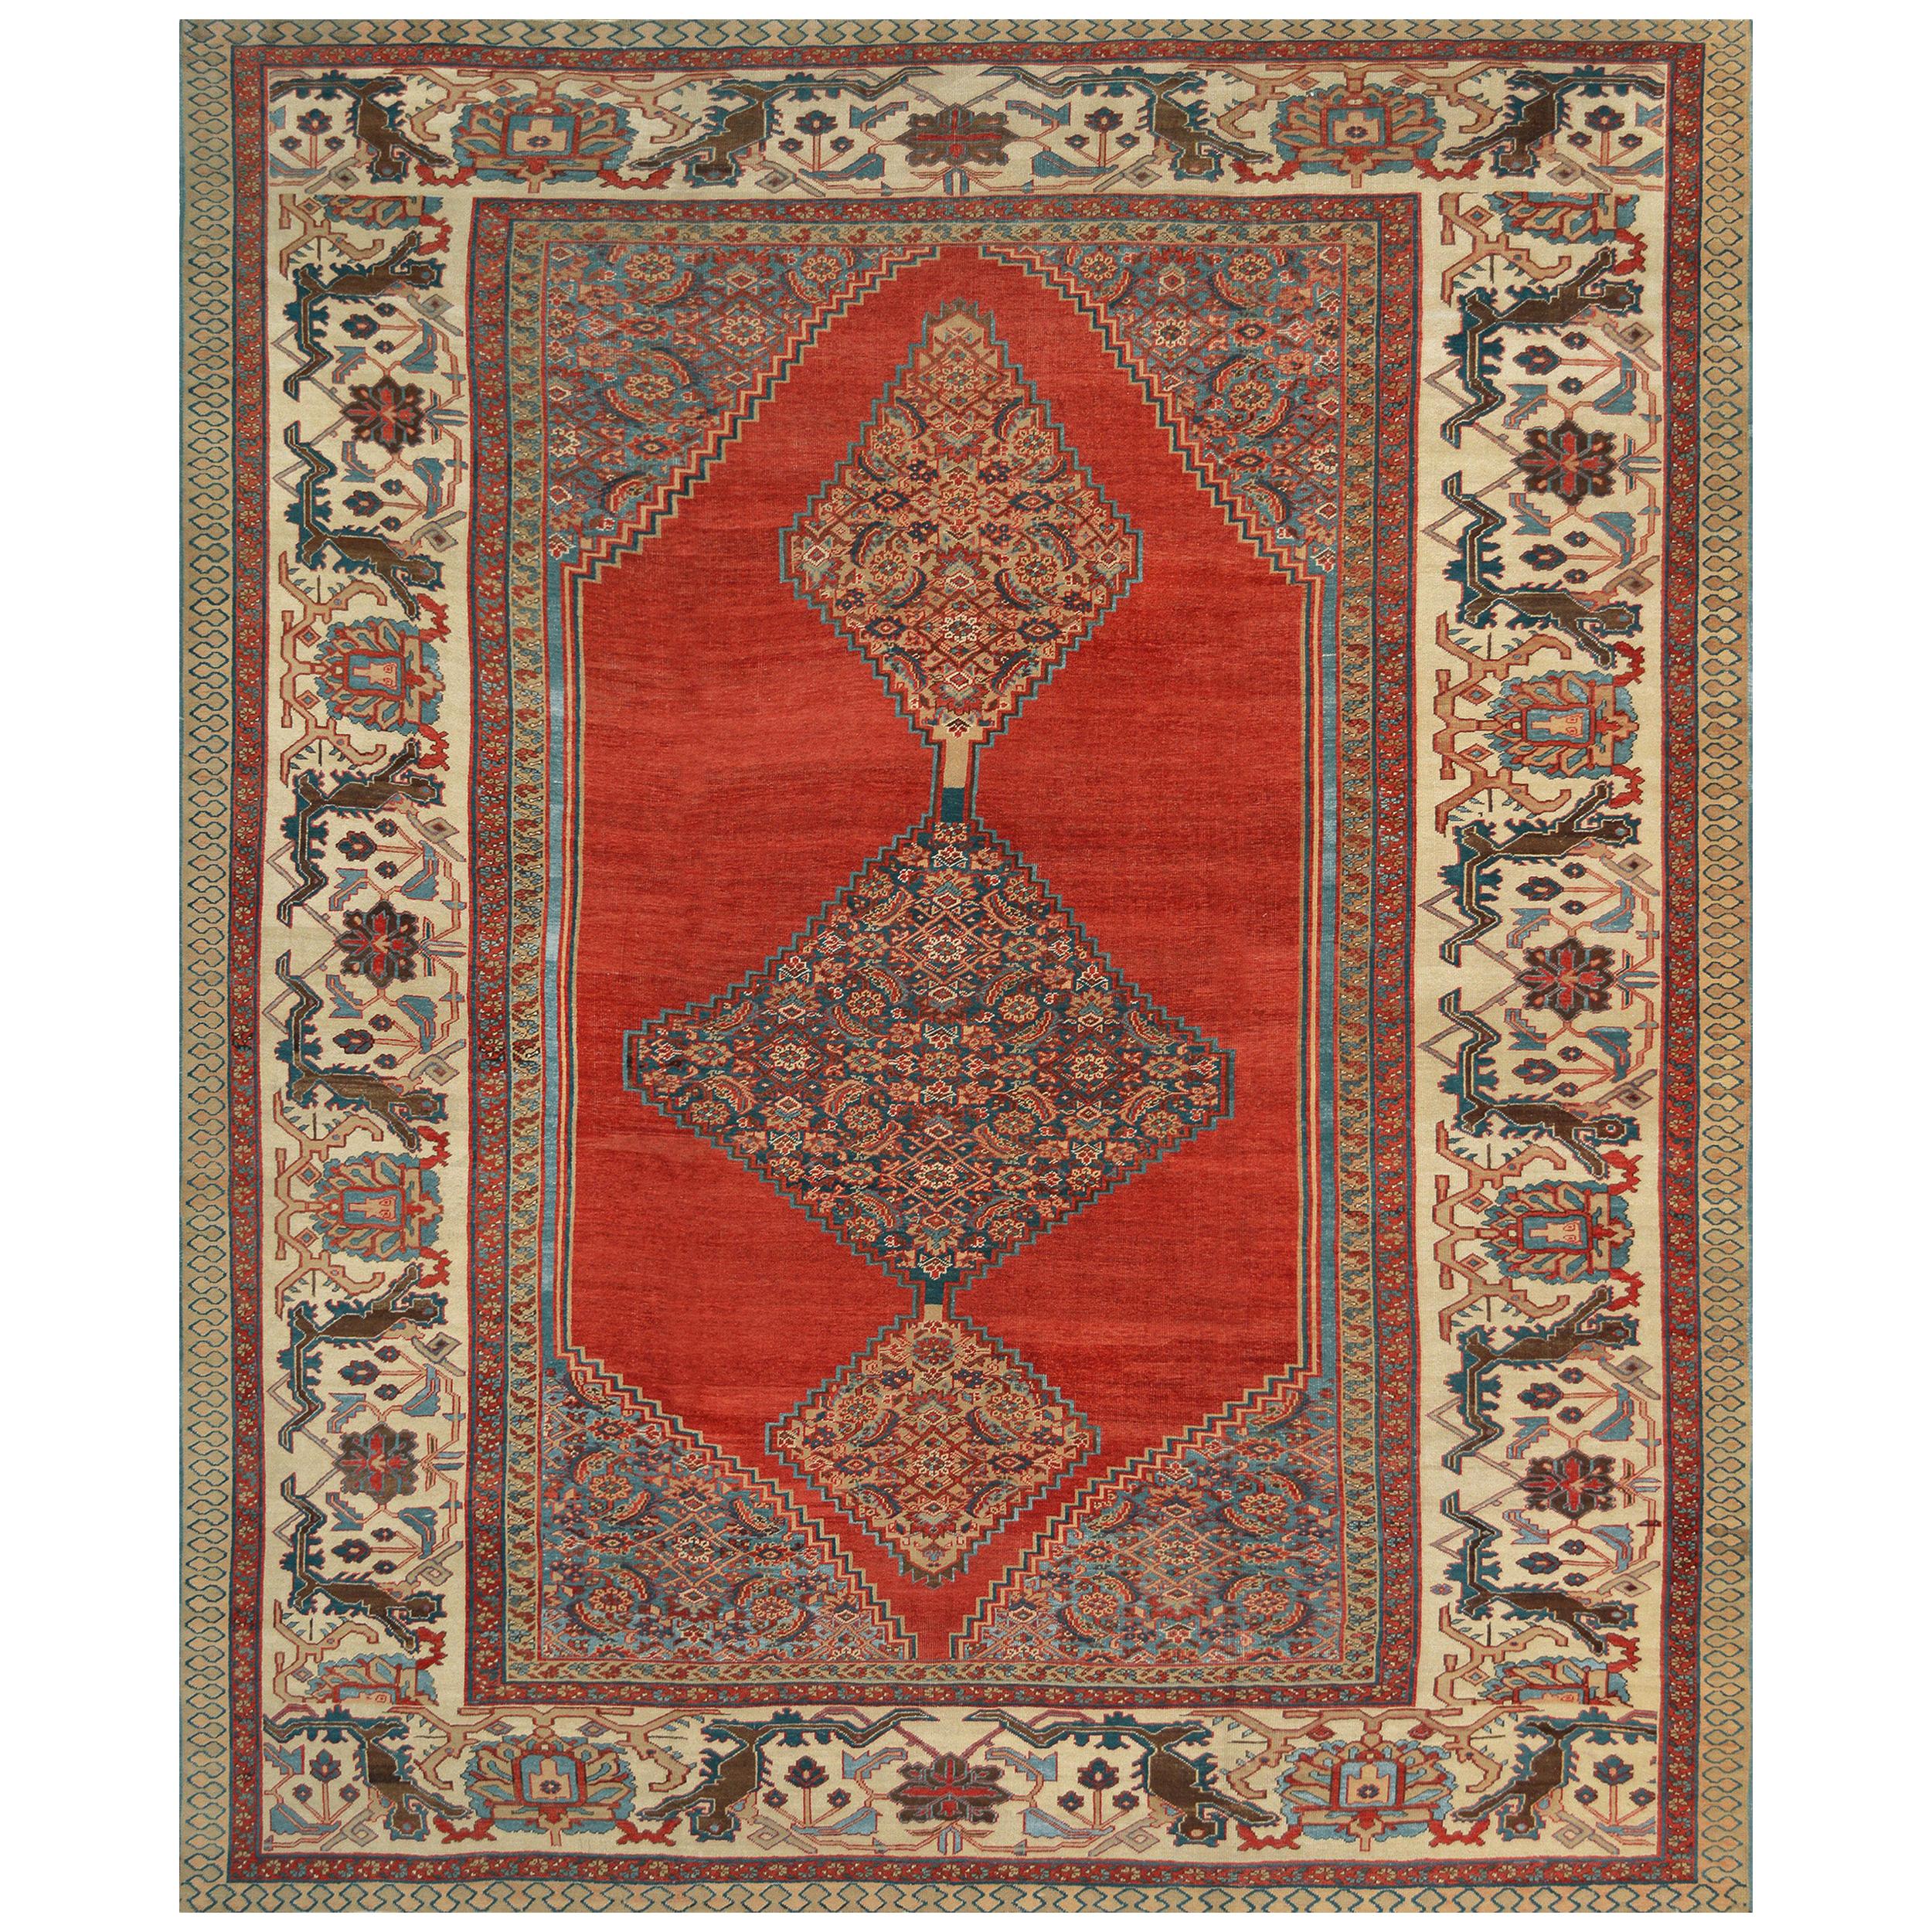 Hand-Woven Late 19th Century Wool Bakhshaish Rug